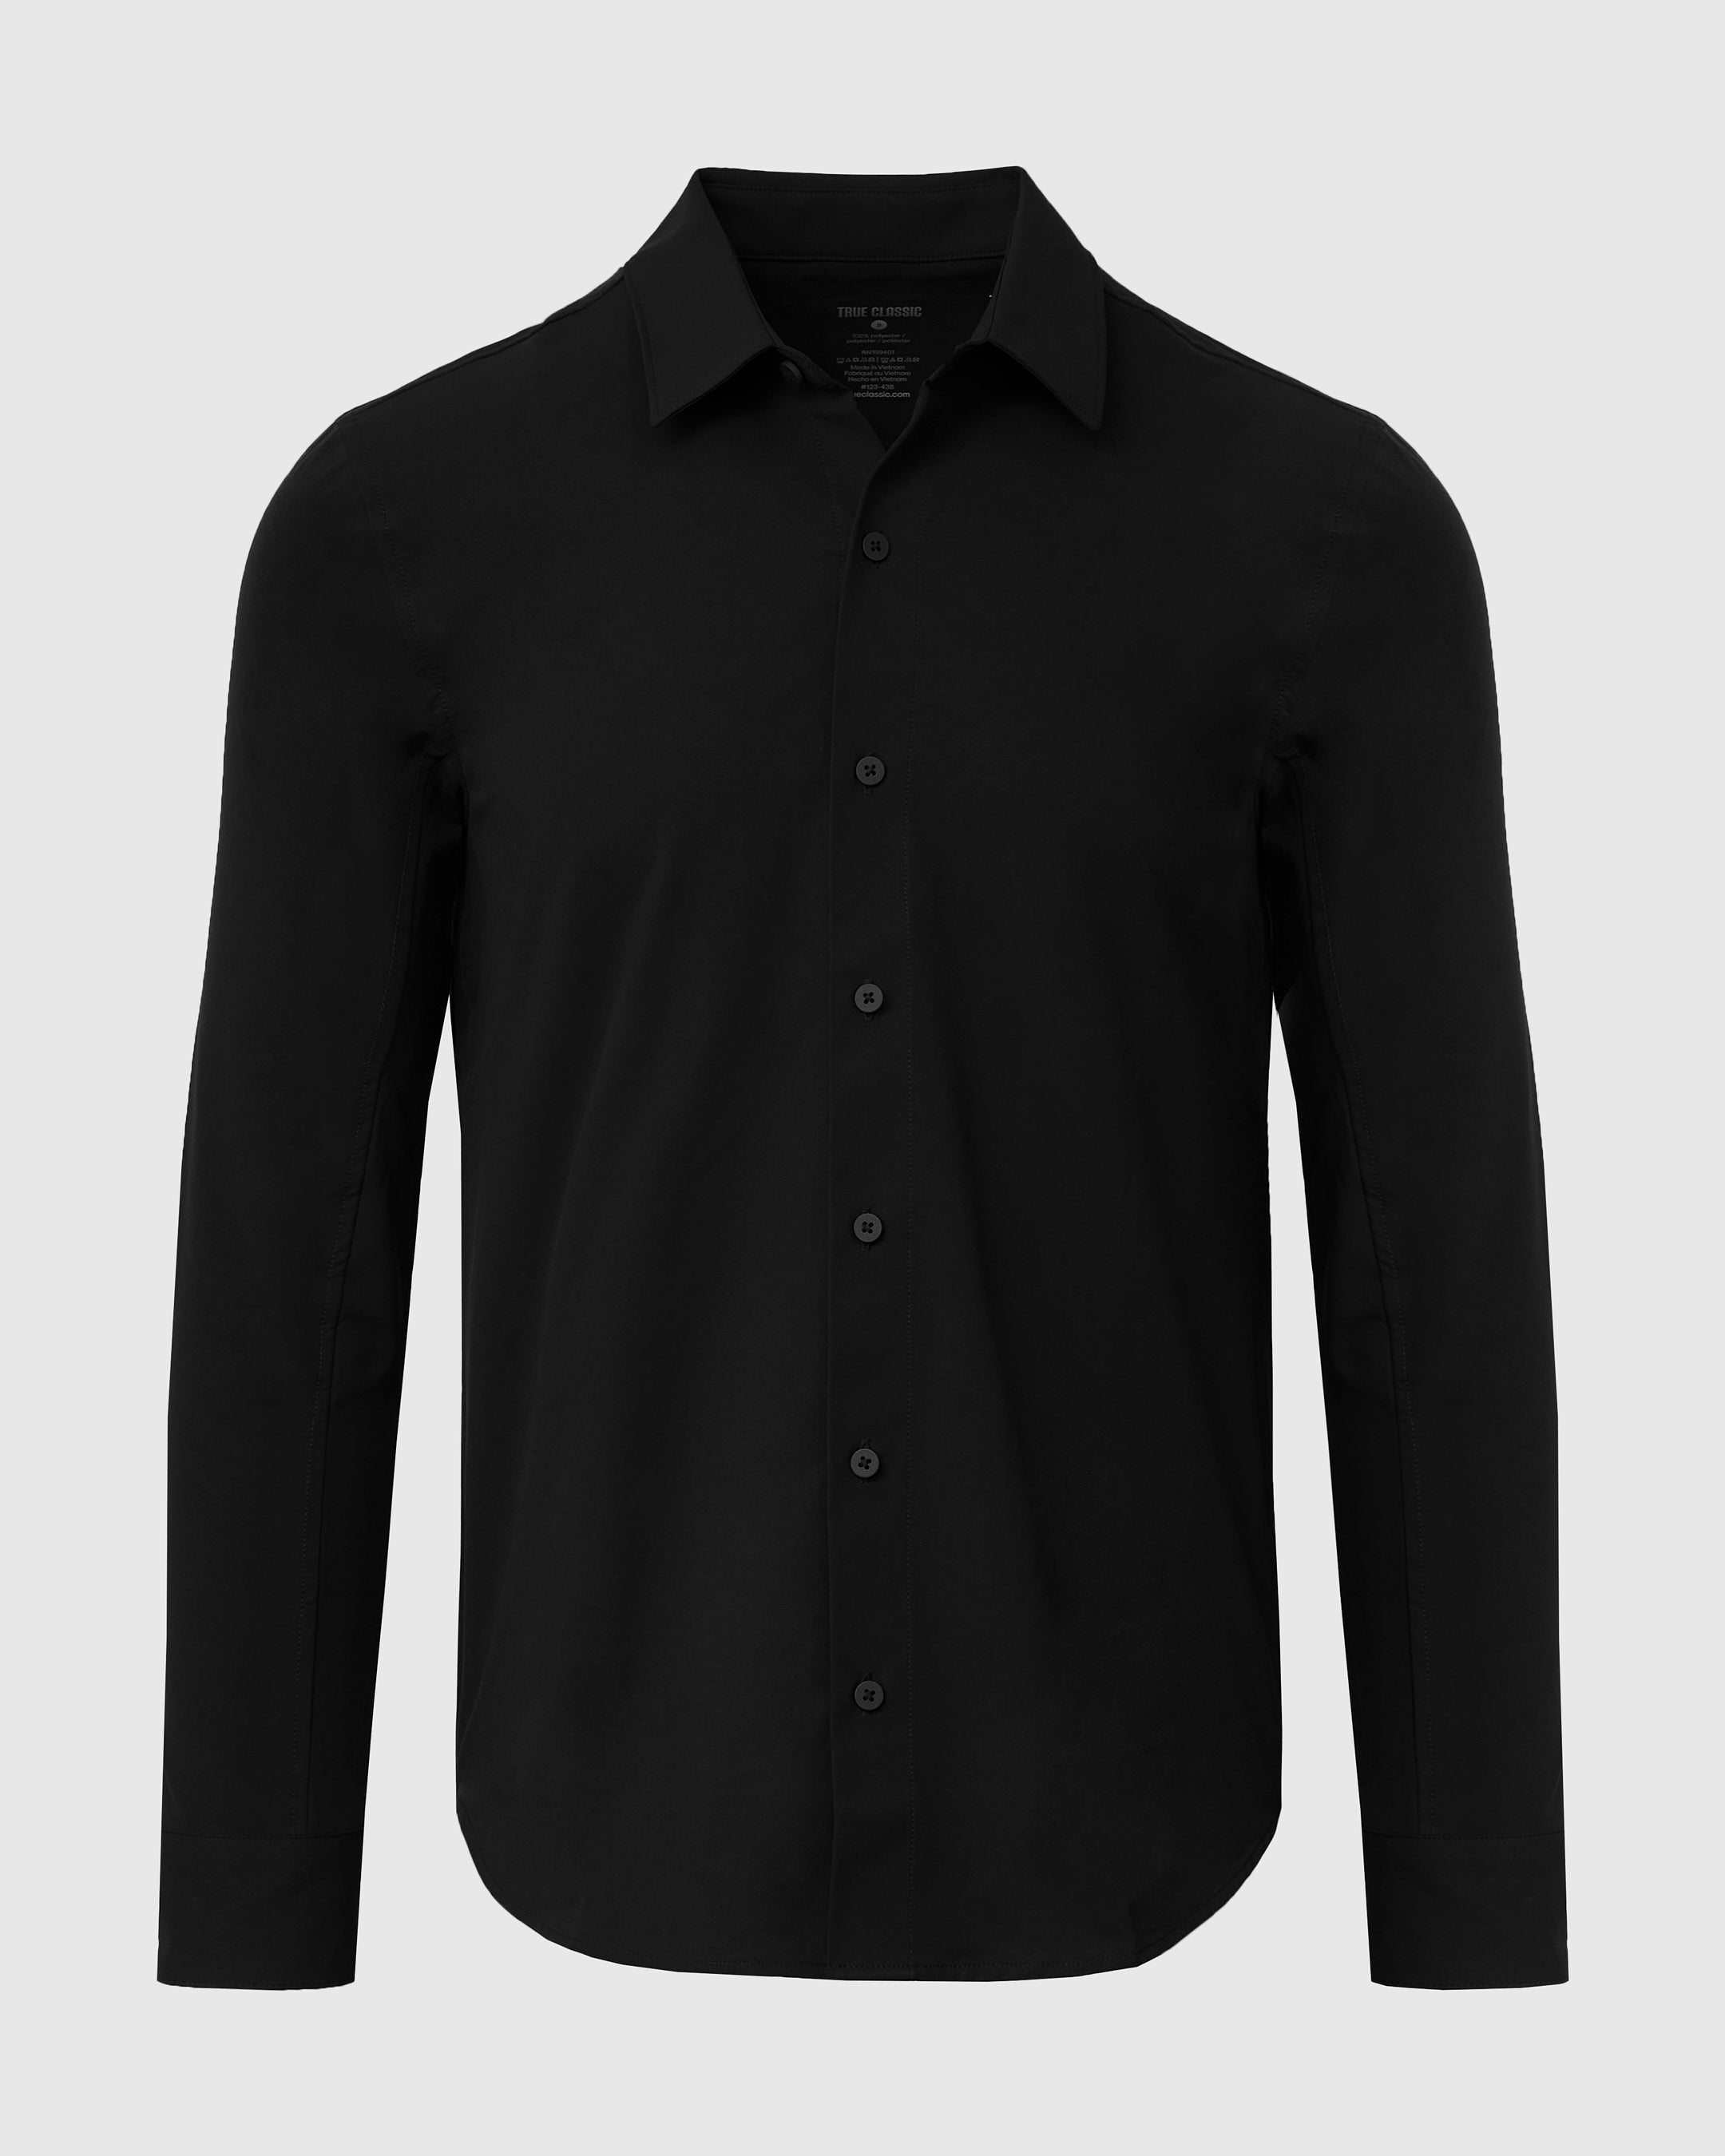 Black Commuter Long Sleeve Button Up Shirt